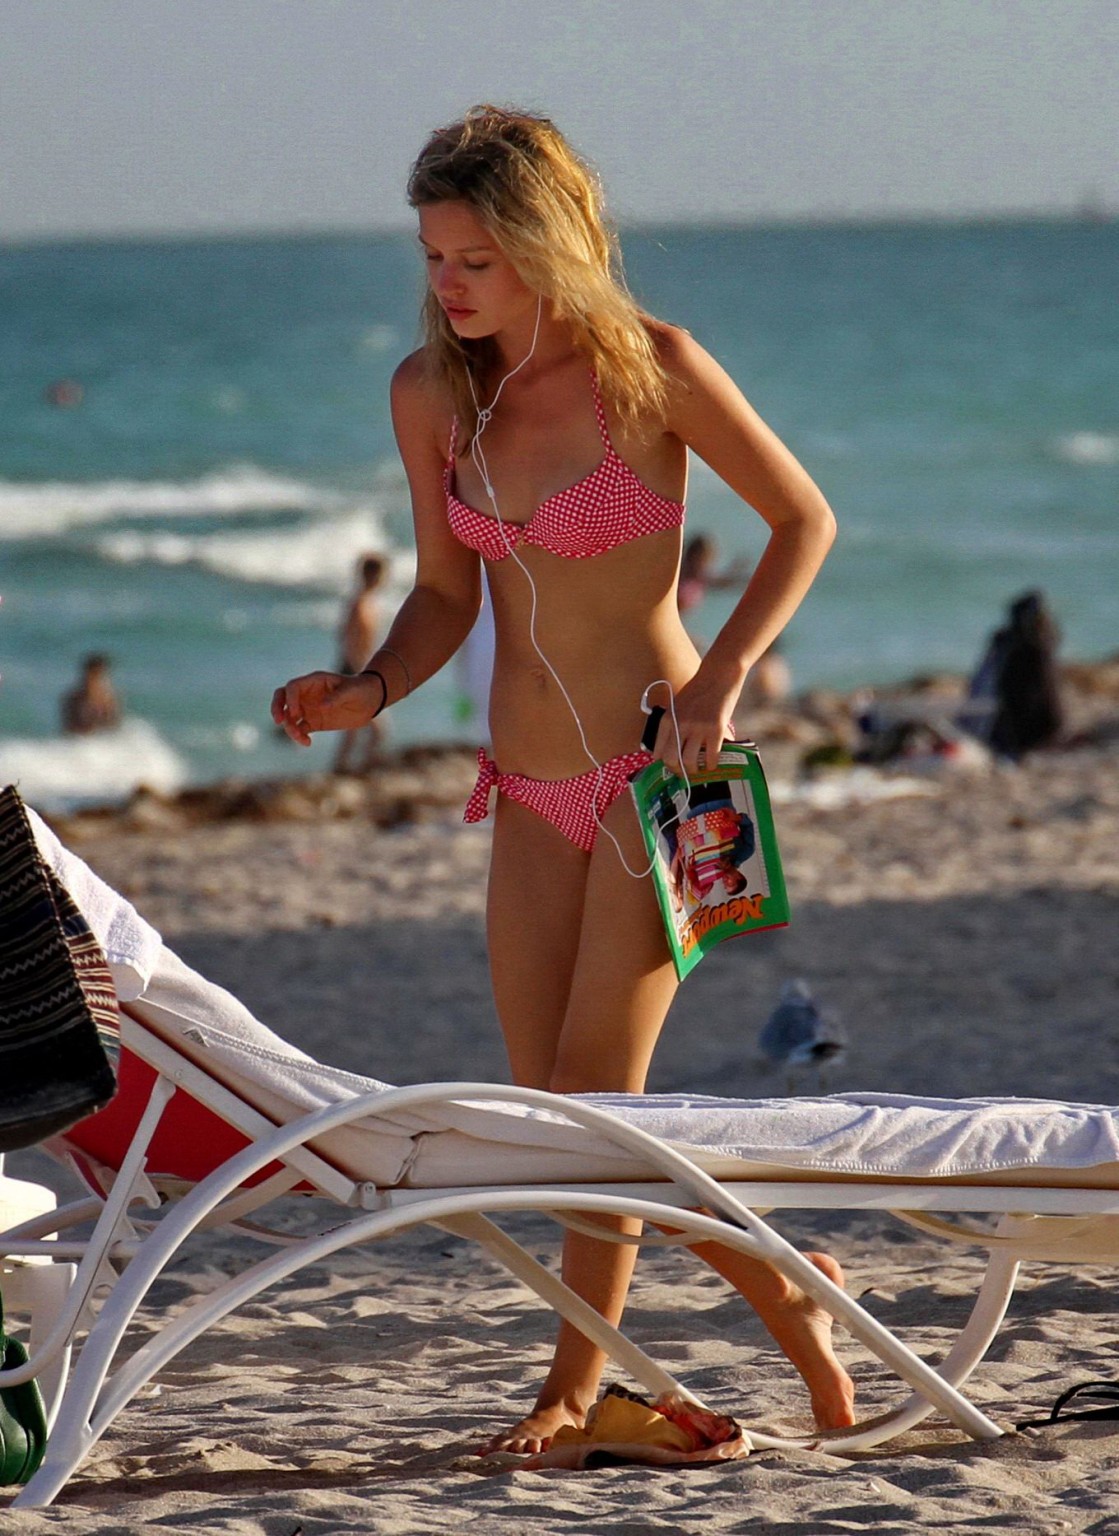 Georgia may jagger mostrando su delgado cuerpo en bikini en una playa de miami
 #75204886